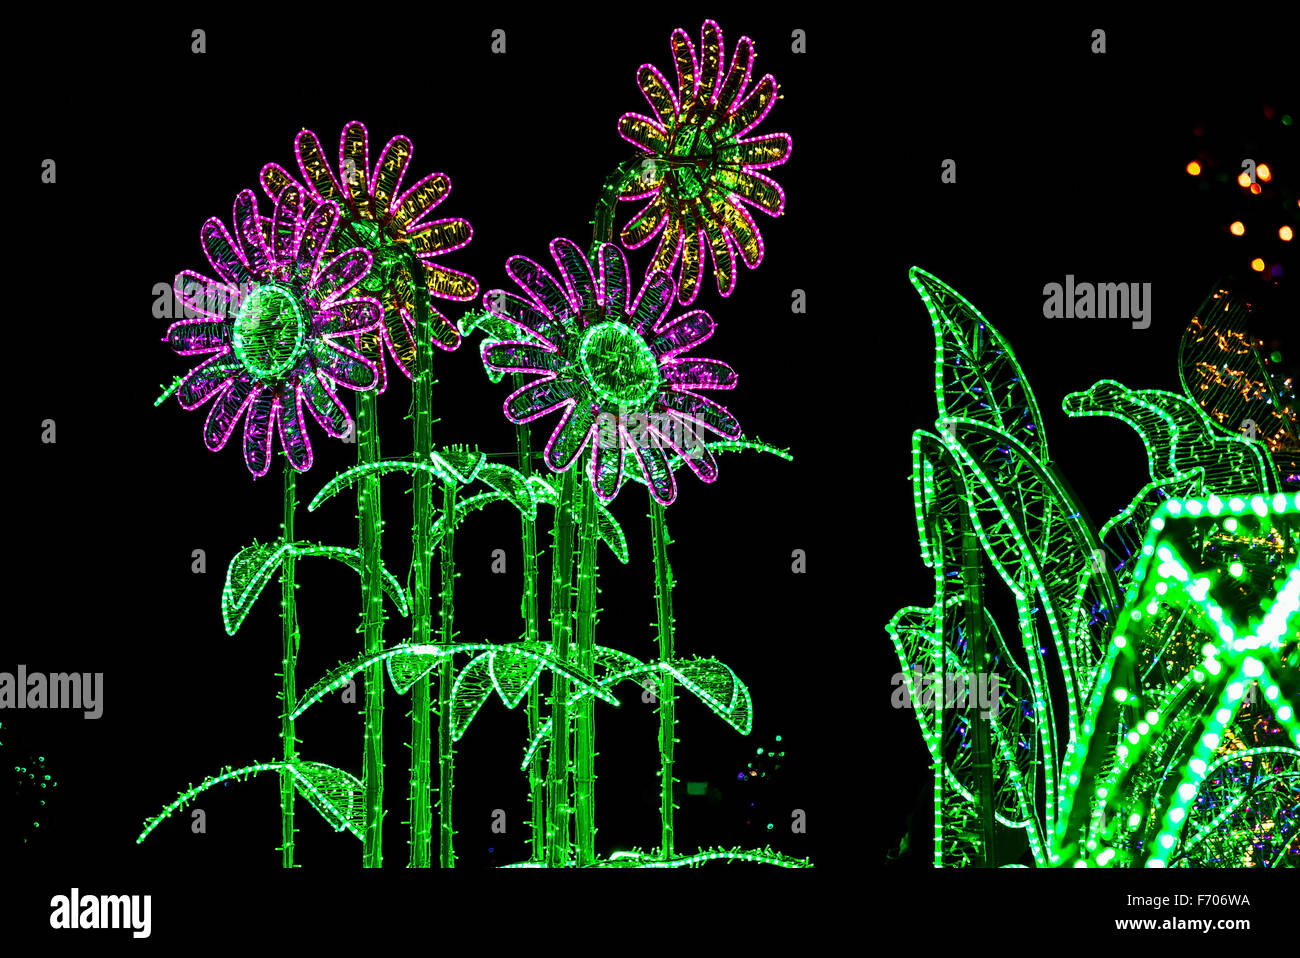 Construcción de flores similares a Chamomiles iluminada por luces de colores Foto de stock